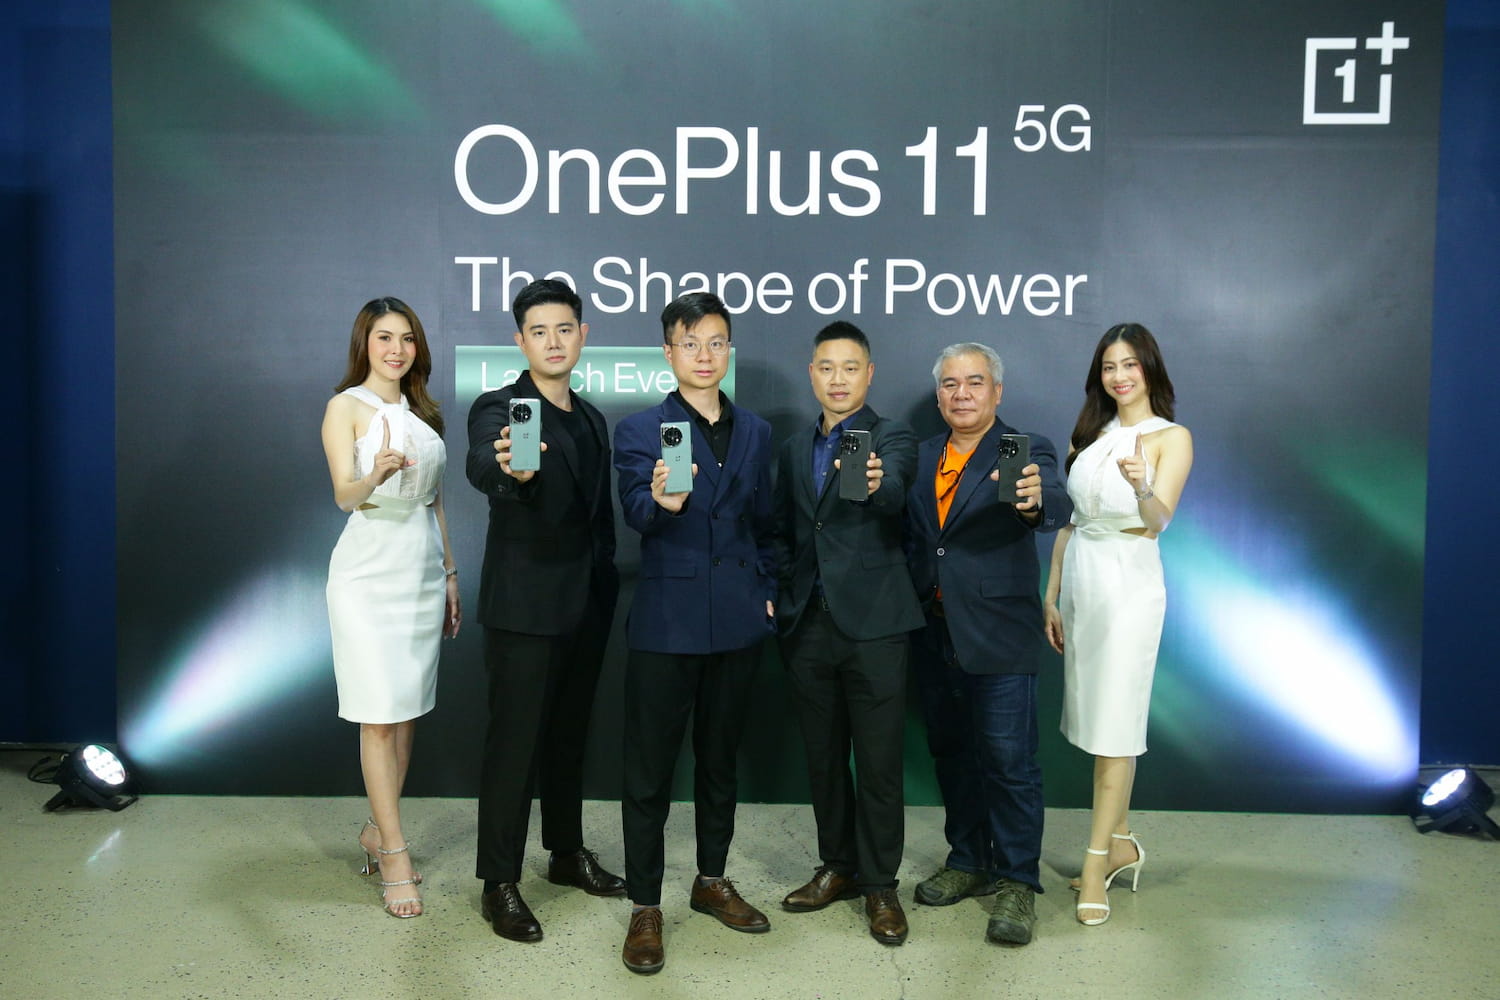 ข่าวโทรศัพท์มือถือ - OnePlus ประเทศไทย เปิดตัว 2 ผลิตภัณฑ์เรือธง OnePlus 11 5G สมาร์ทโฟนเรือธงสุดล้ำยุค มาพร้อมหูฟัง OnePlus Bus Pro 2